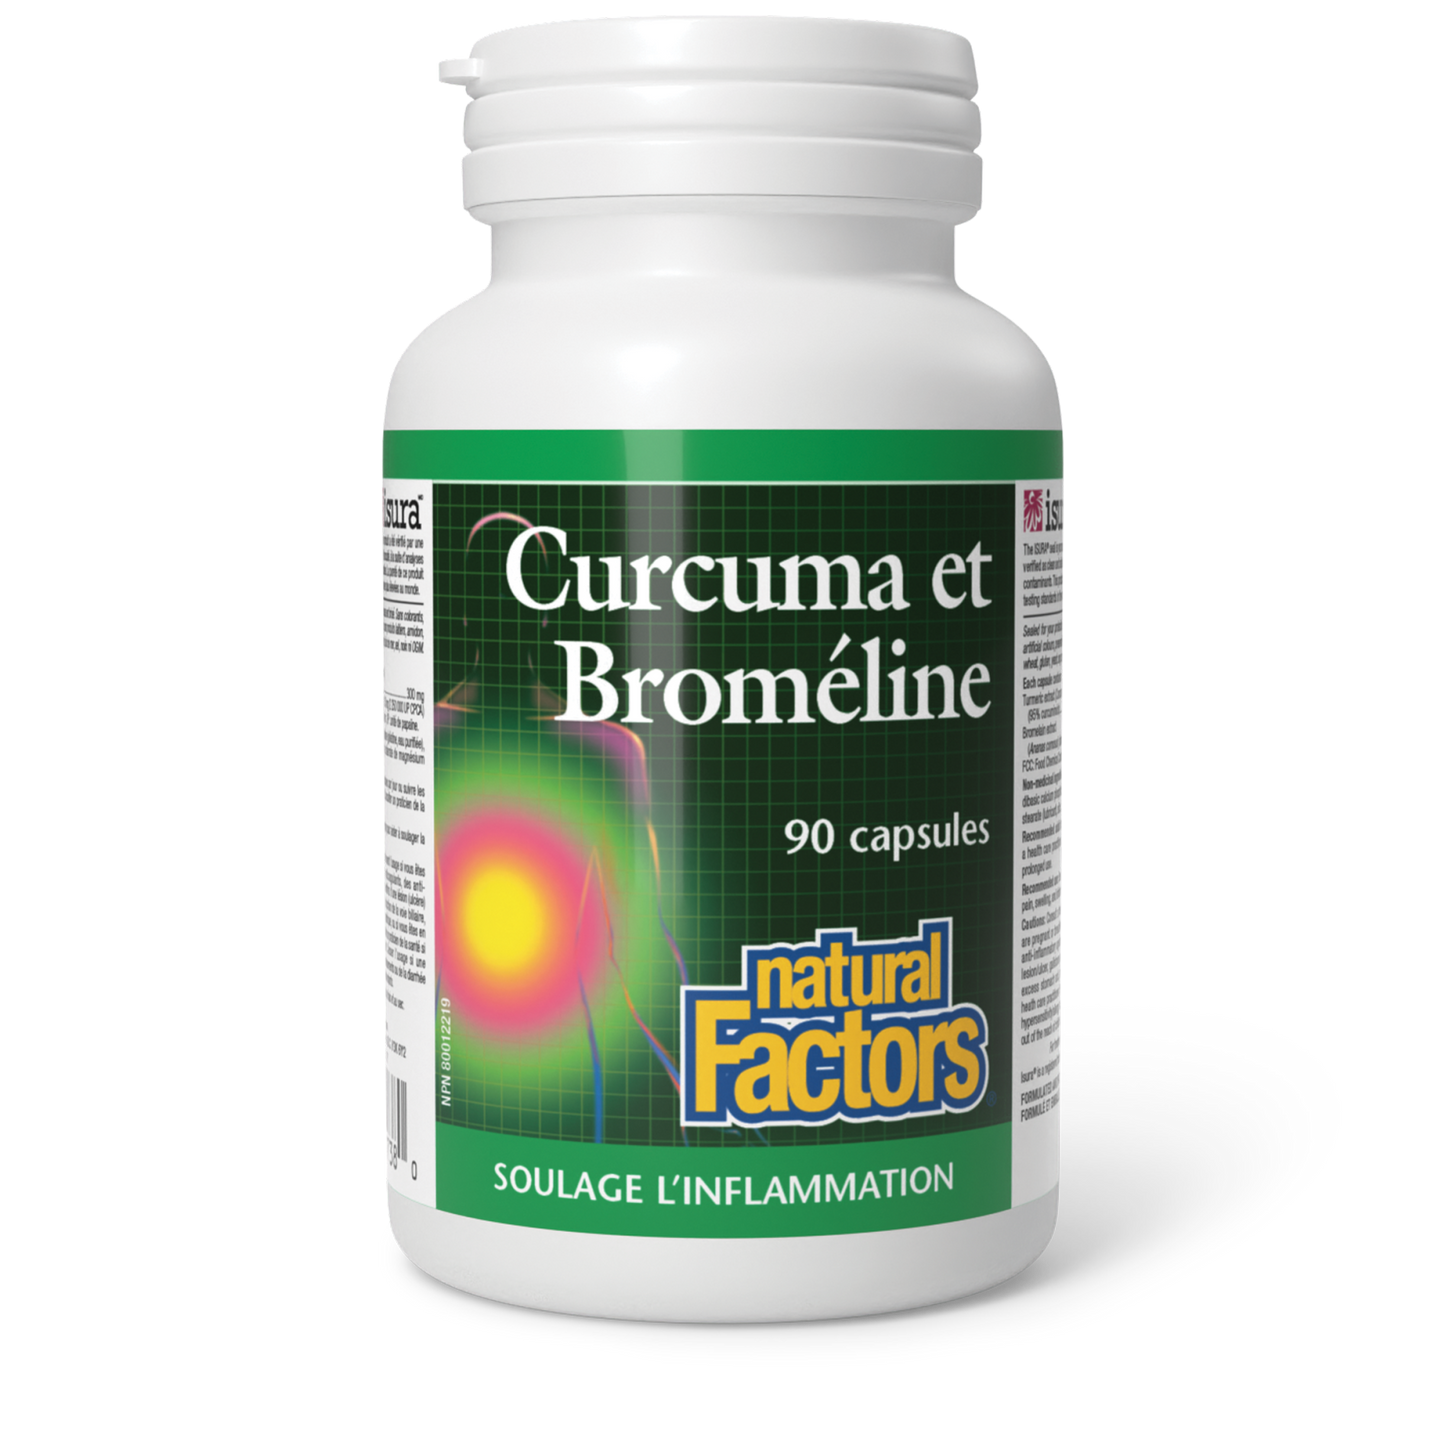 Curcuma et broméline, Natural Factors|v|image|1738